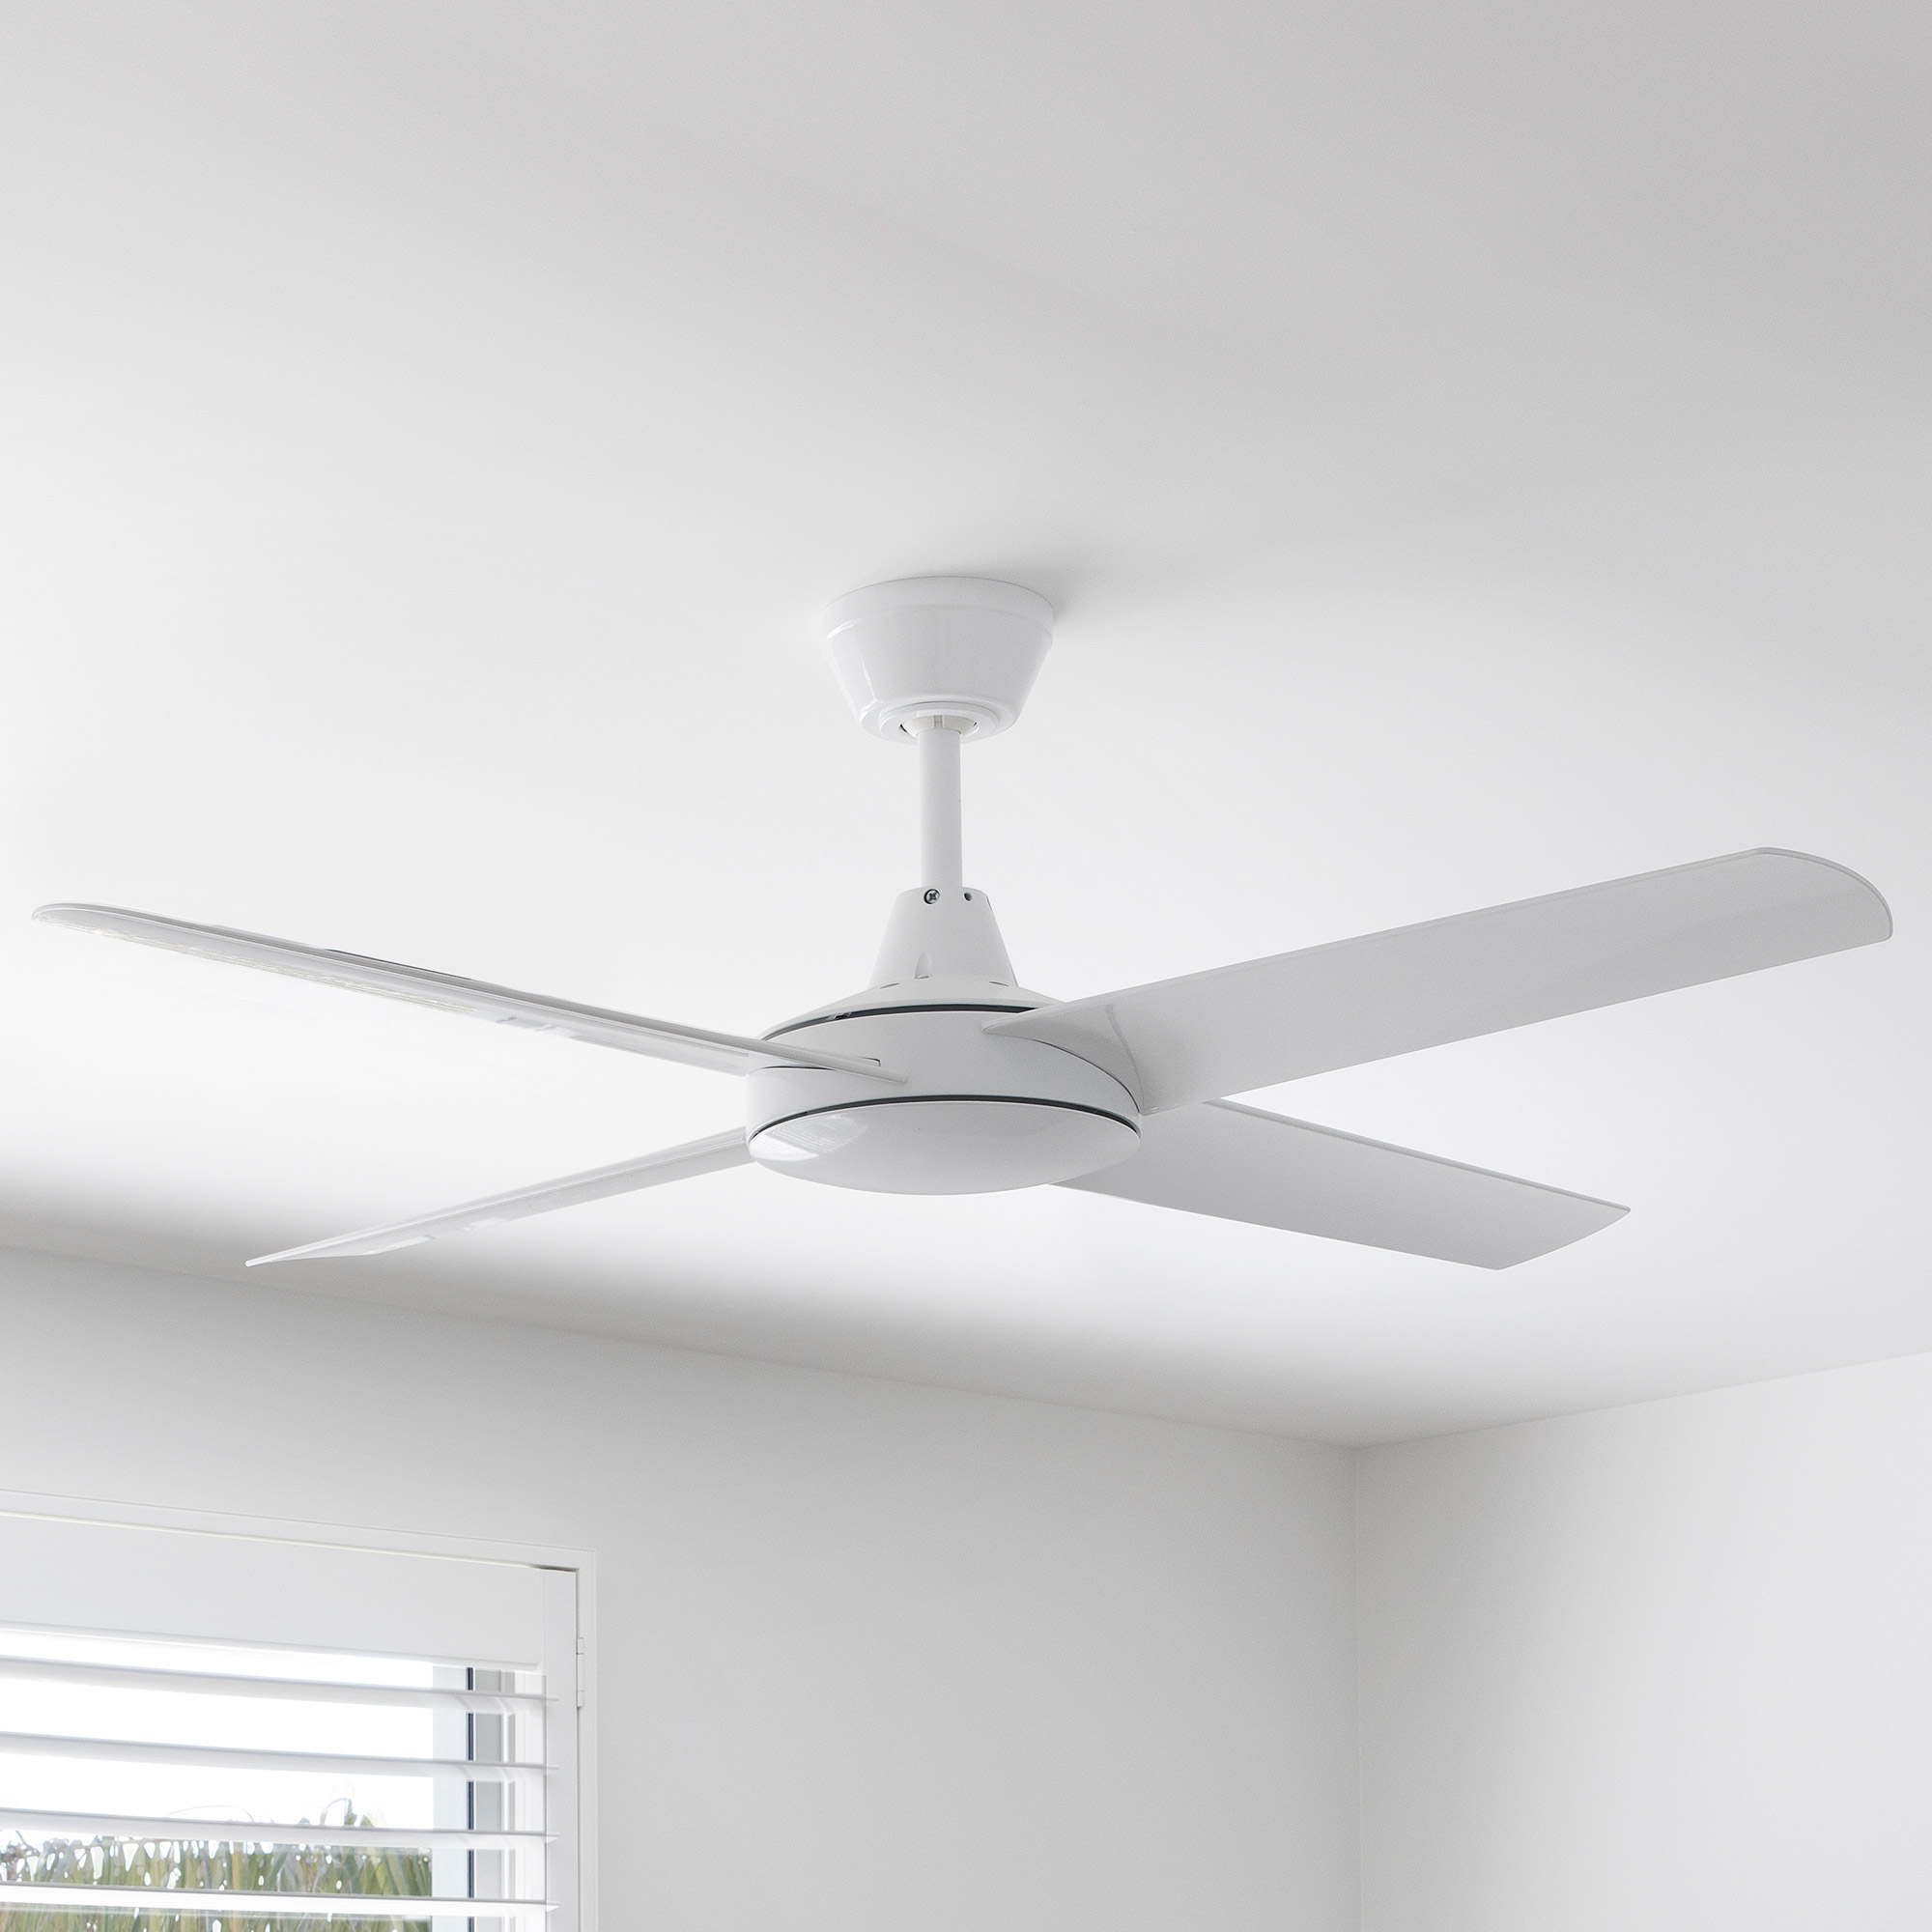 52" Aspire White Ceiling Fan in Bedroom